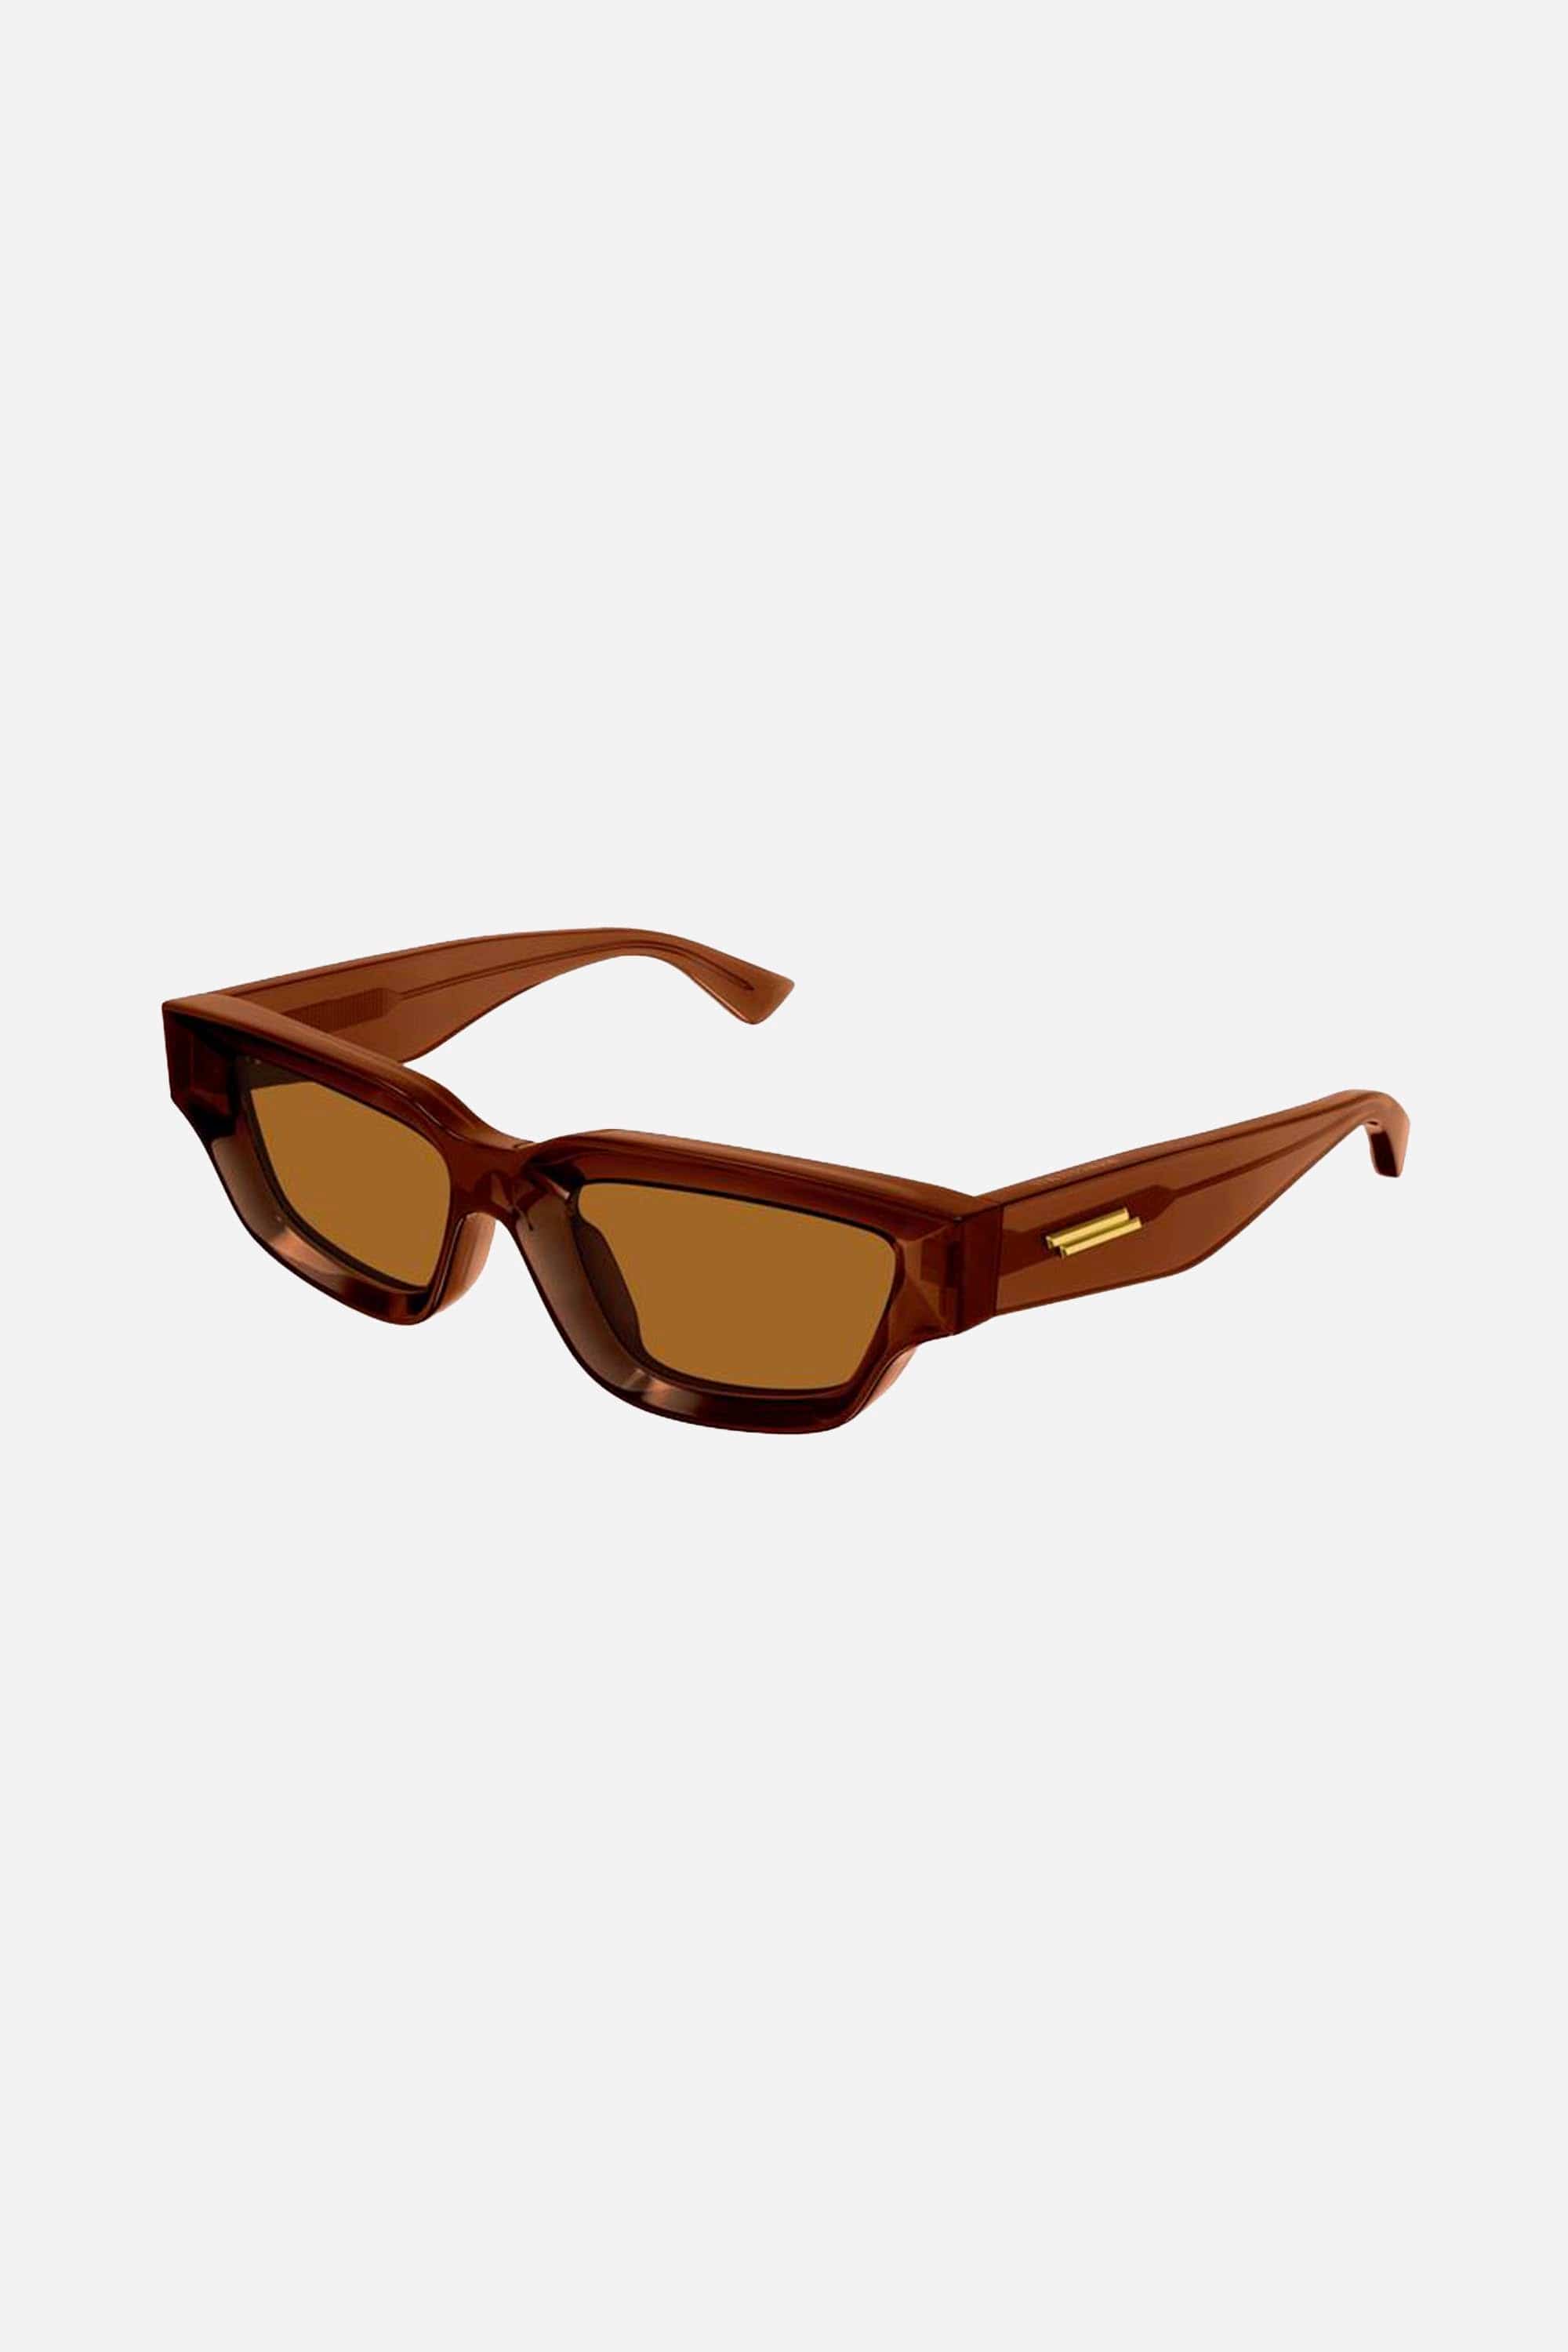 Bottega Veneta micro rectangular orange sunglasses - Eyewear Club